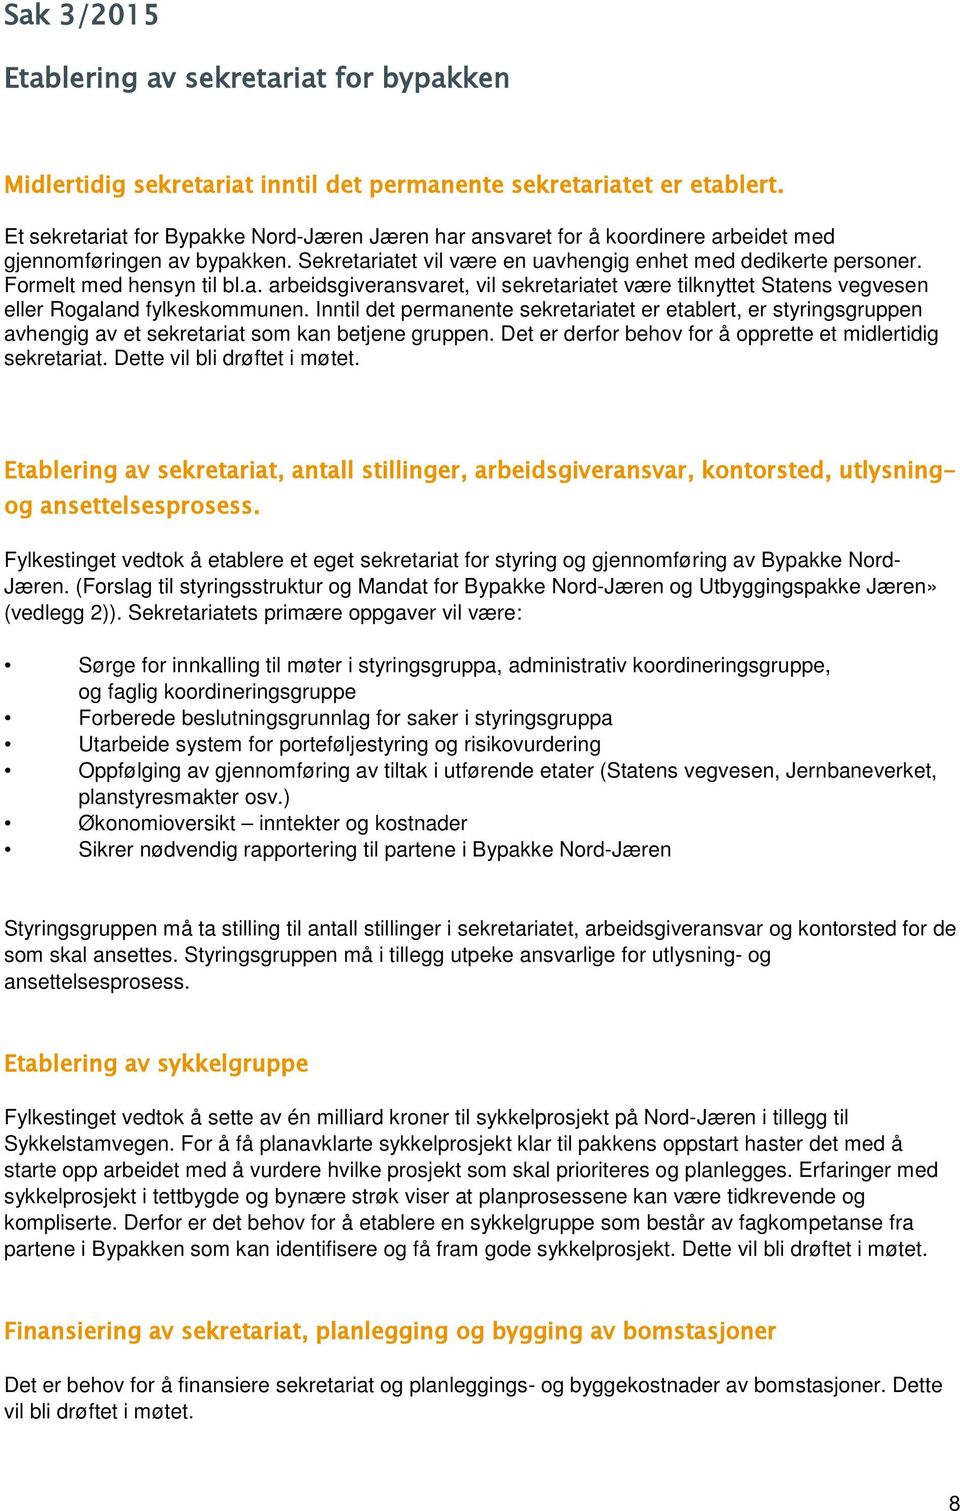 Formelt med hensyn til bl.a. arbeidsgiveransvaret, vil sekretariatet være tilknyttet Statens vegvesen eller Rogaland fylkeskommunen.